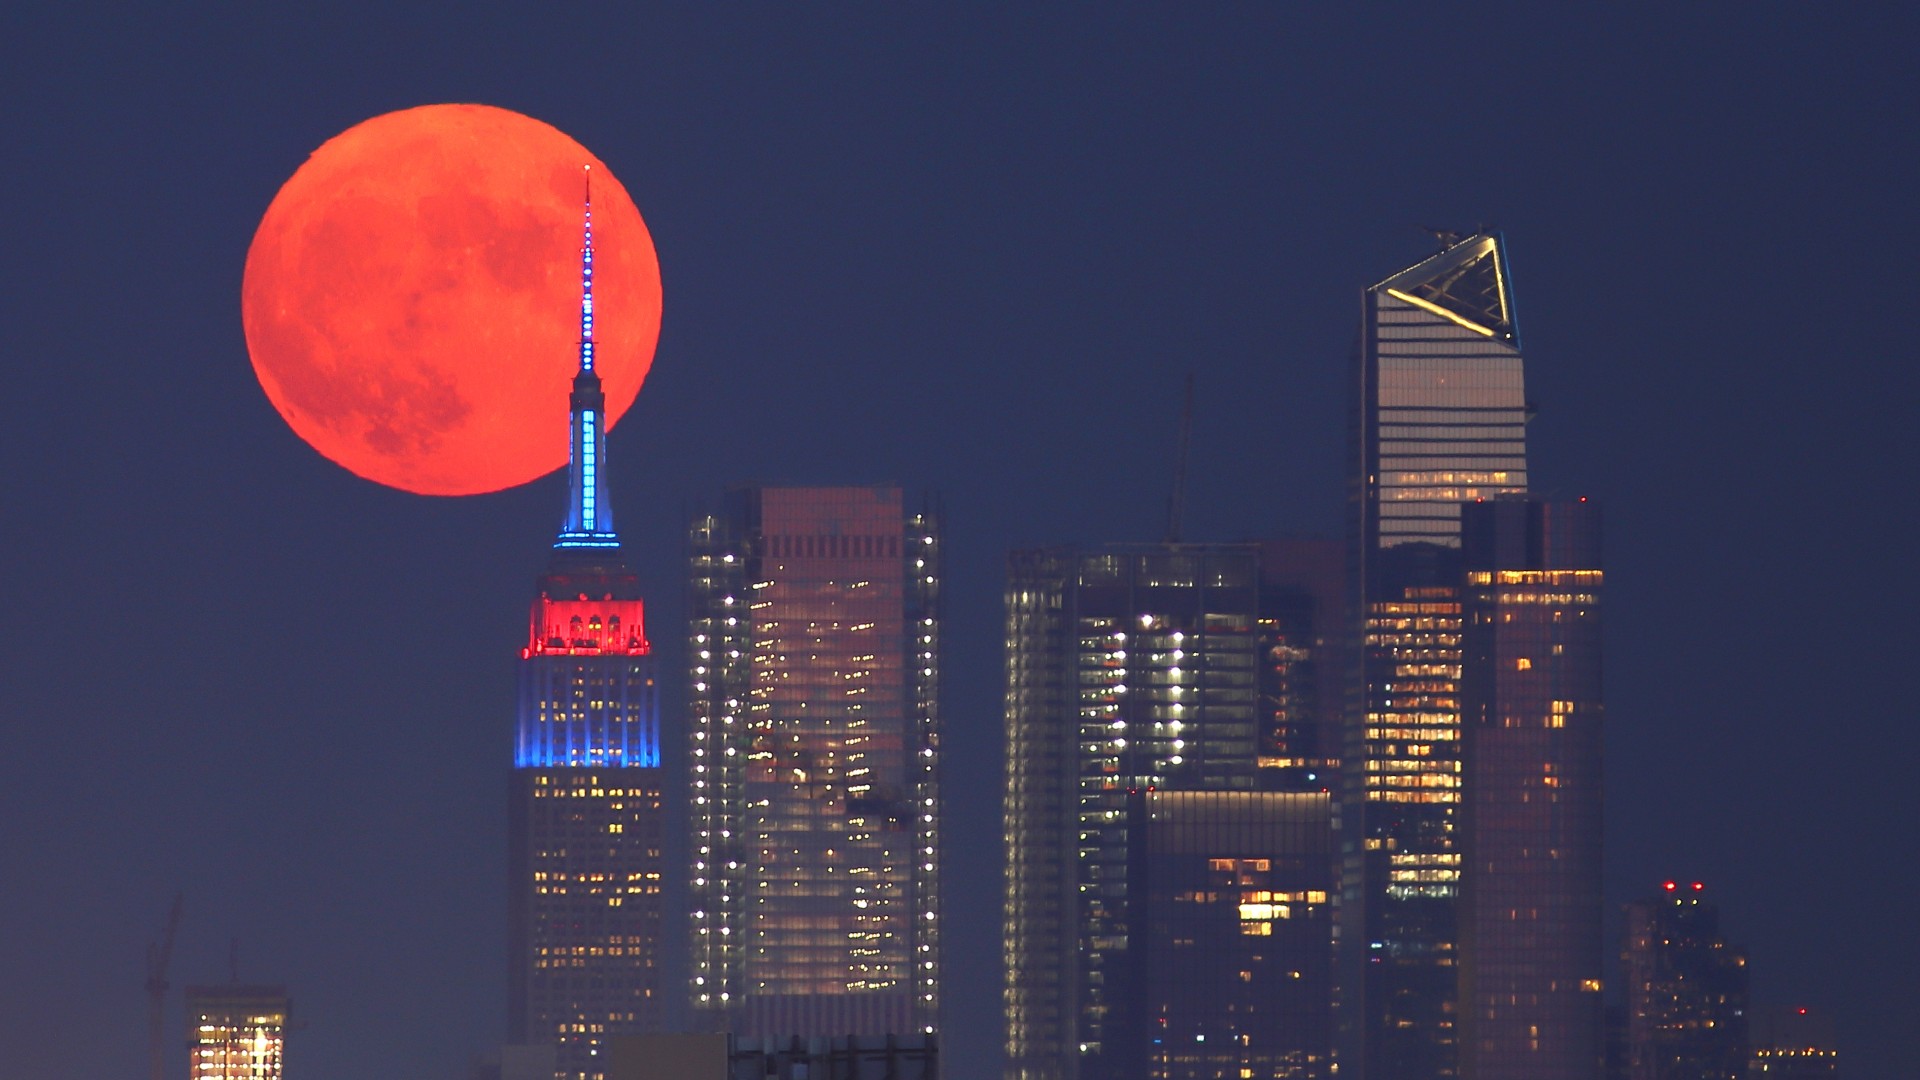 Une pleine lune Buck ou Thunder Moon (pleine lune rouge) est vue derrière Hudson Yards et l'Empire State Building dans les couleurs du drapeau des concurrents des Jeux olympiques de Tokyo vus de Lyndhurst le 23 juillet 2021 à New York.  , New Jersey.